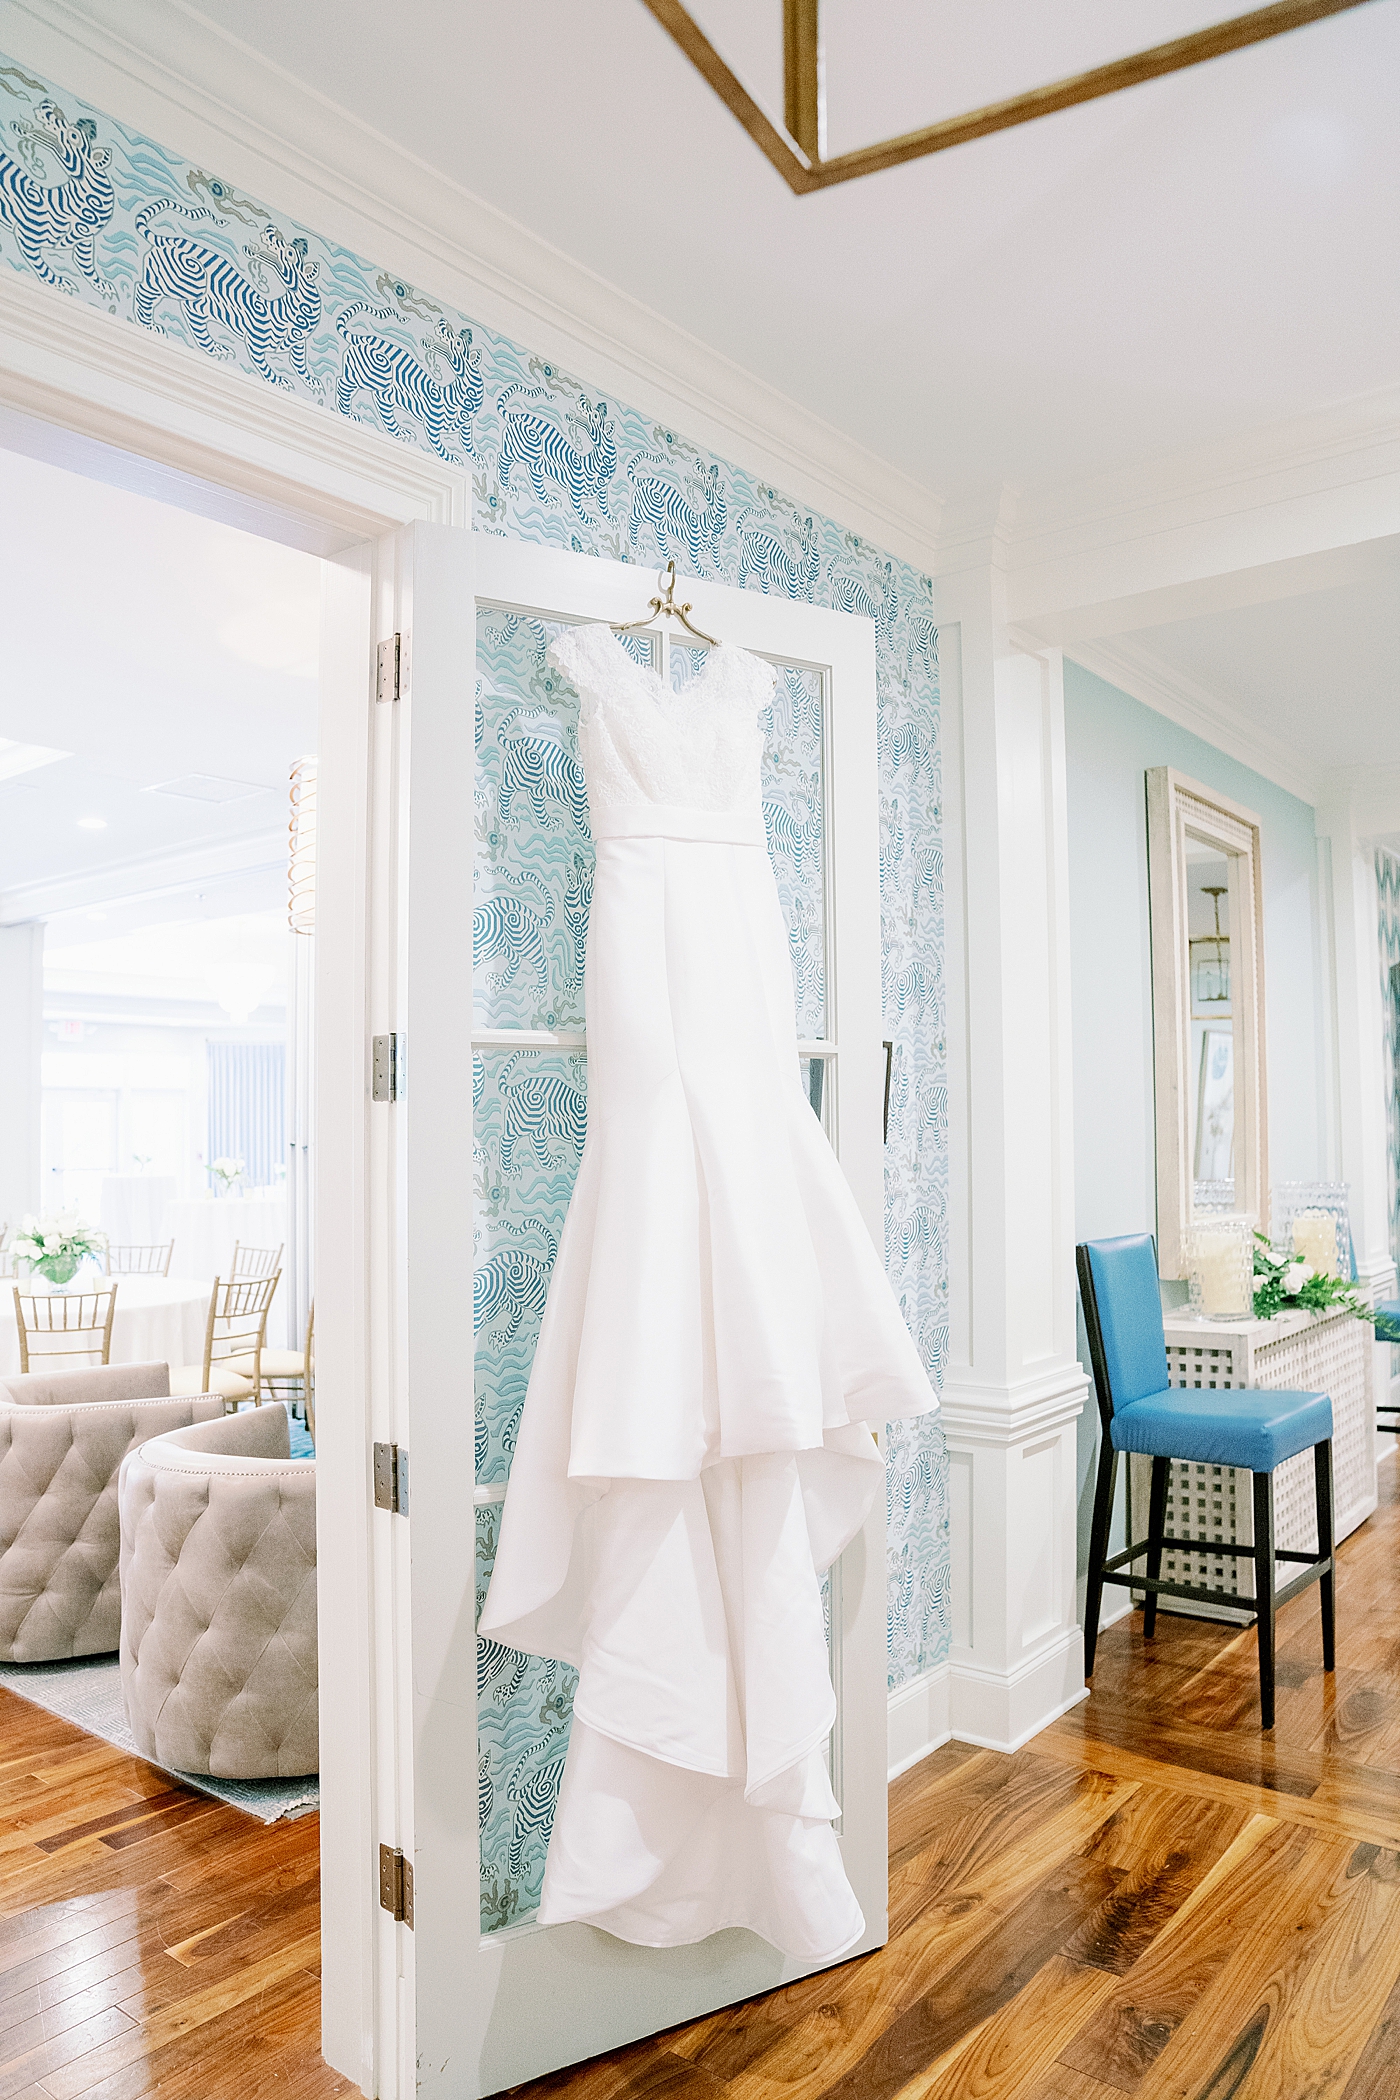 Bride's wedding gown hangin on doorframe | Image by Annie Laura Photo